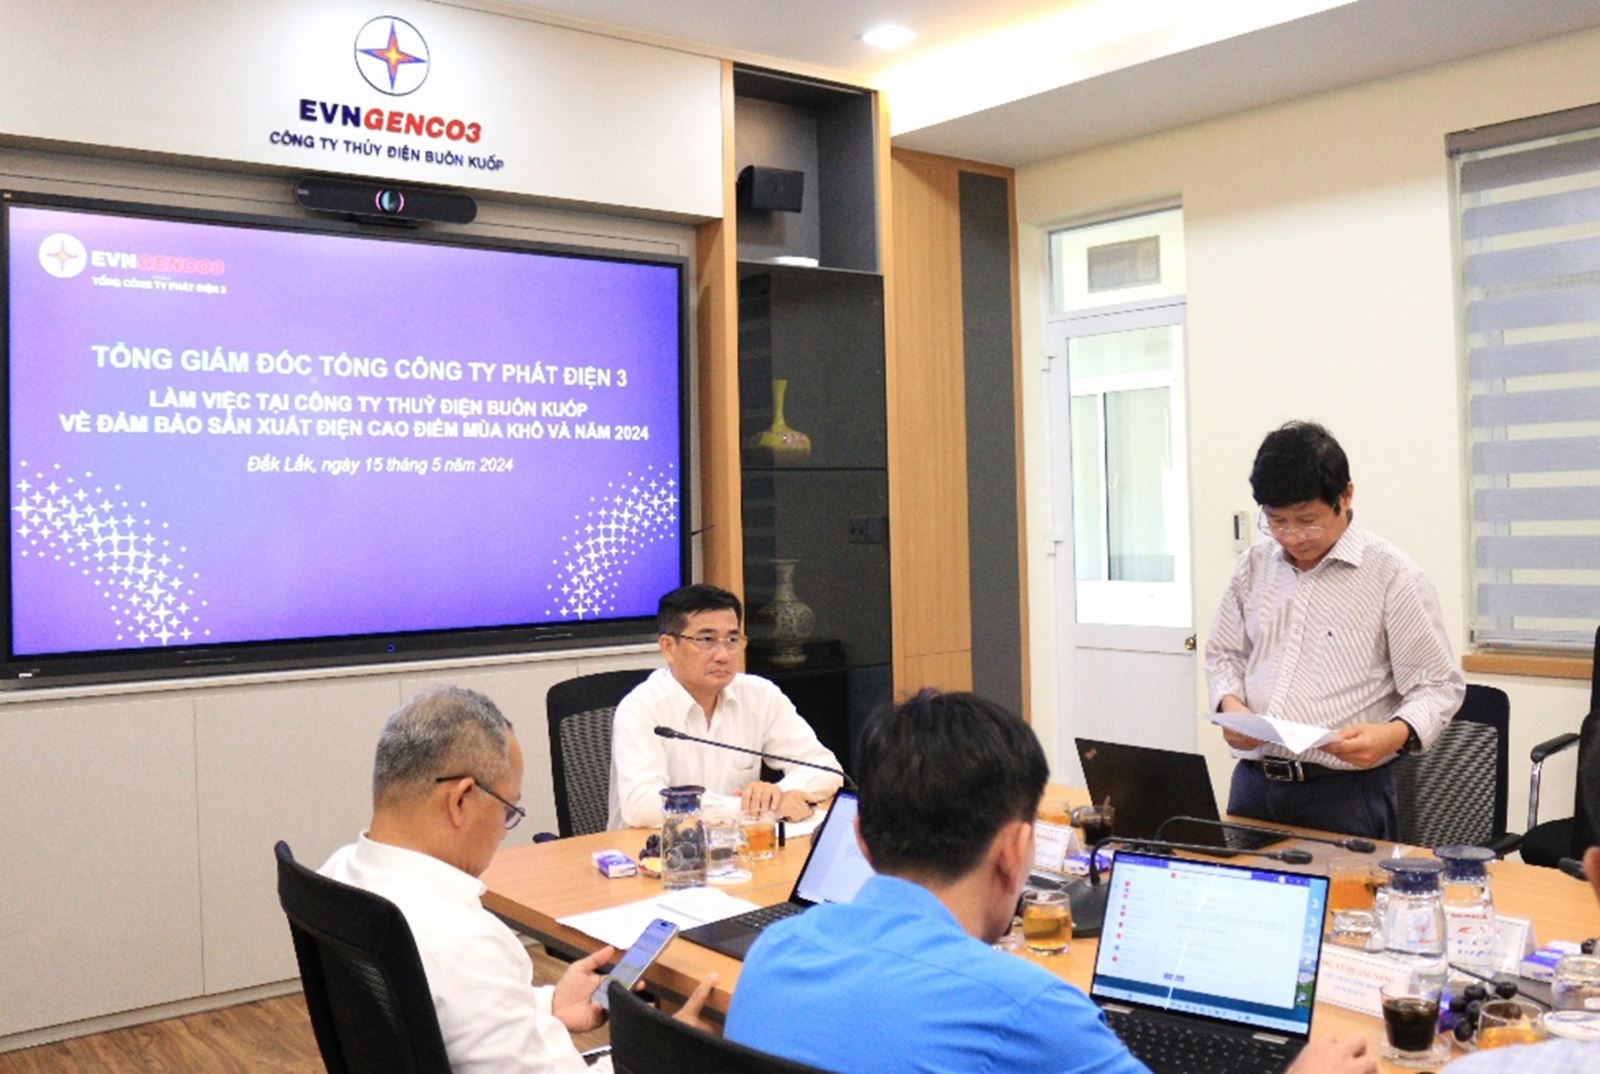 Ông Trần Văn Khánh - Giám đốc Công ty Thủy điện Buôn Kuốp báo cáo tại buổi làm việc.